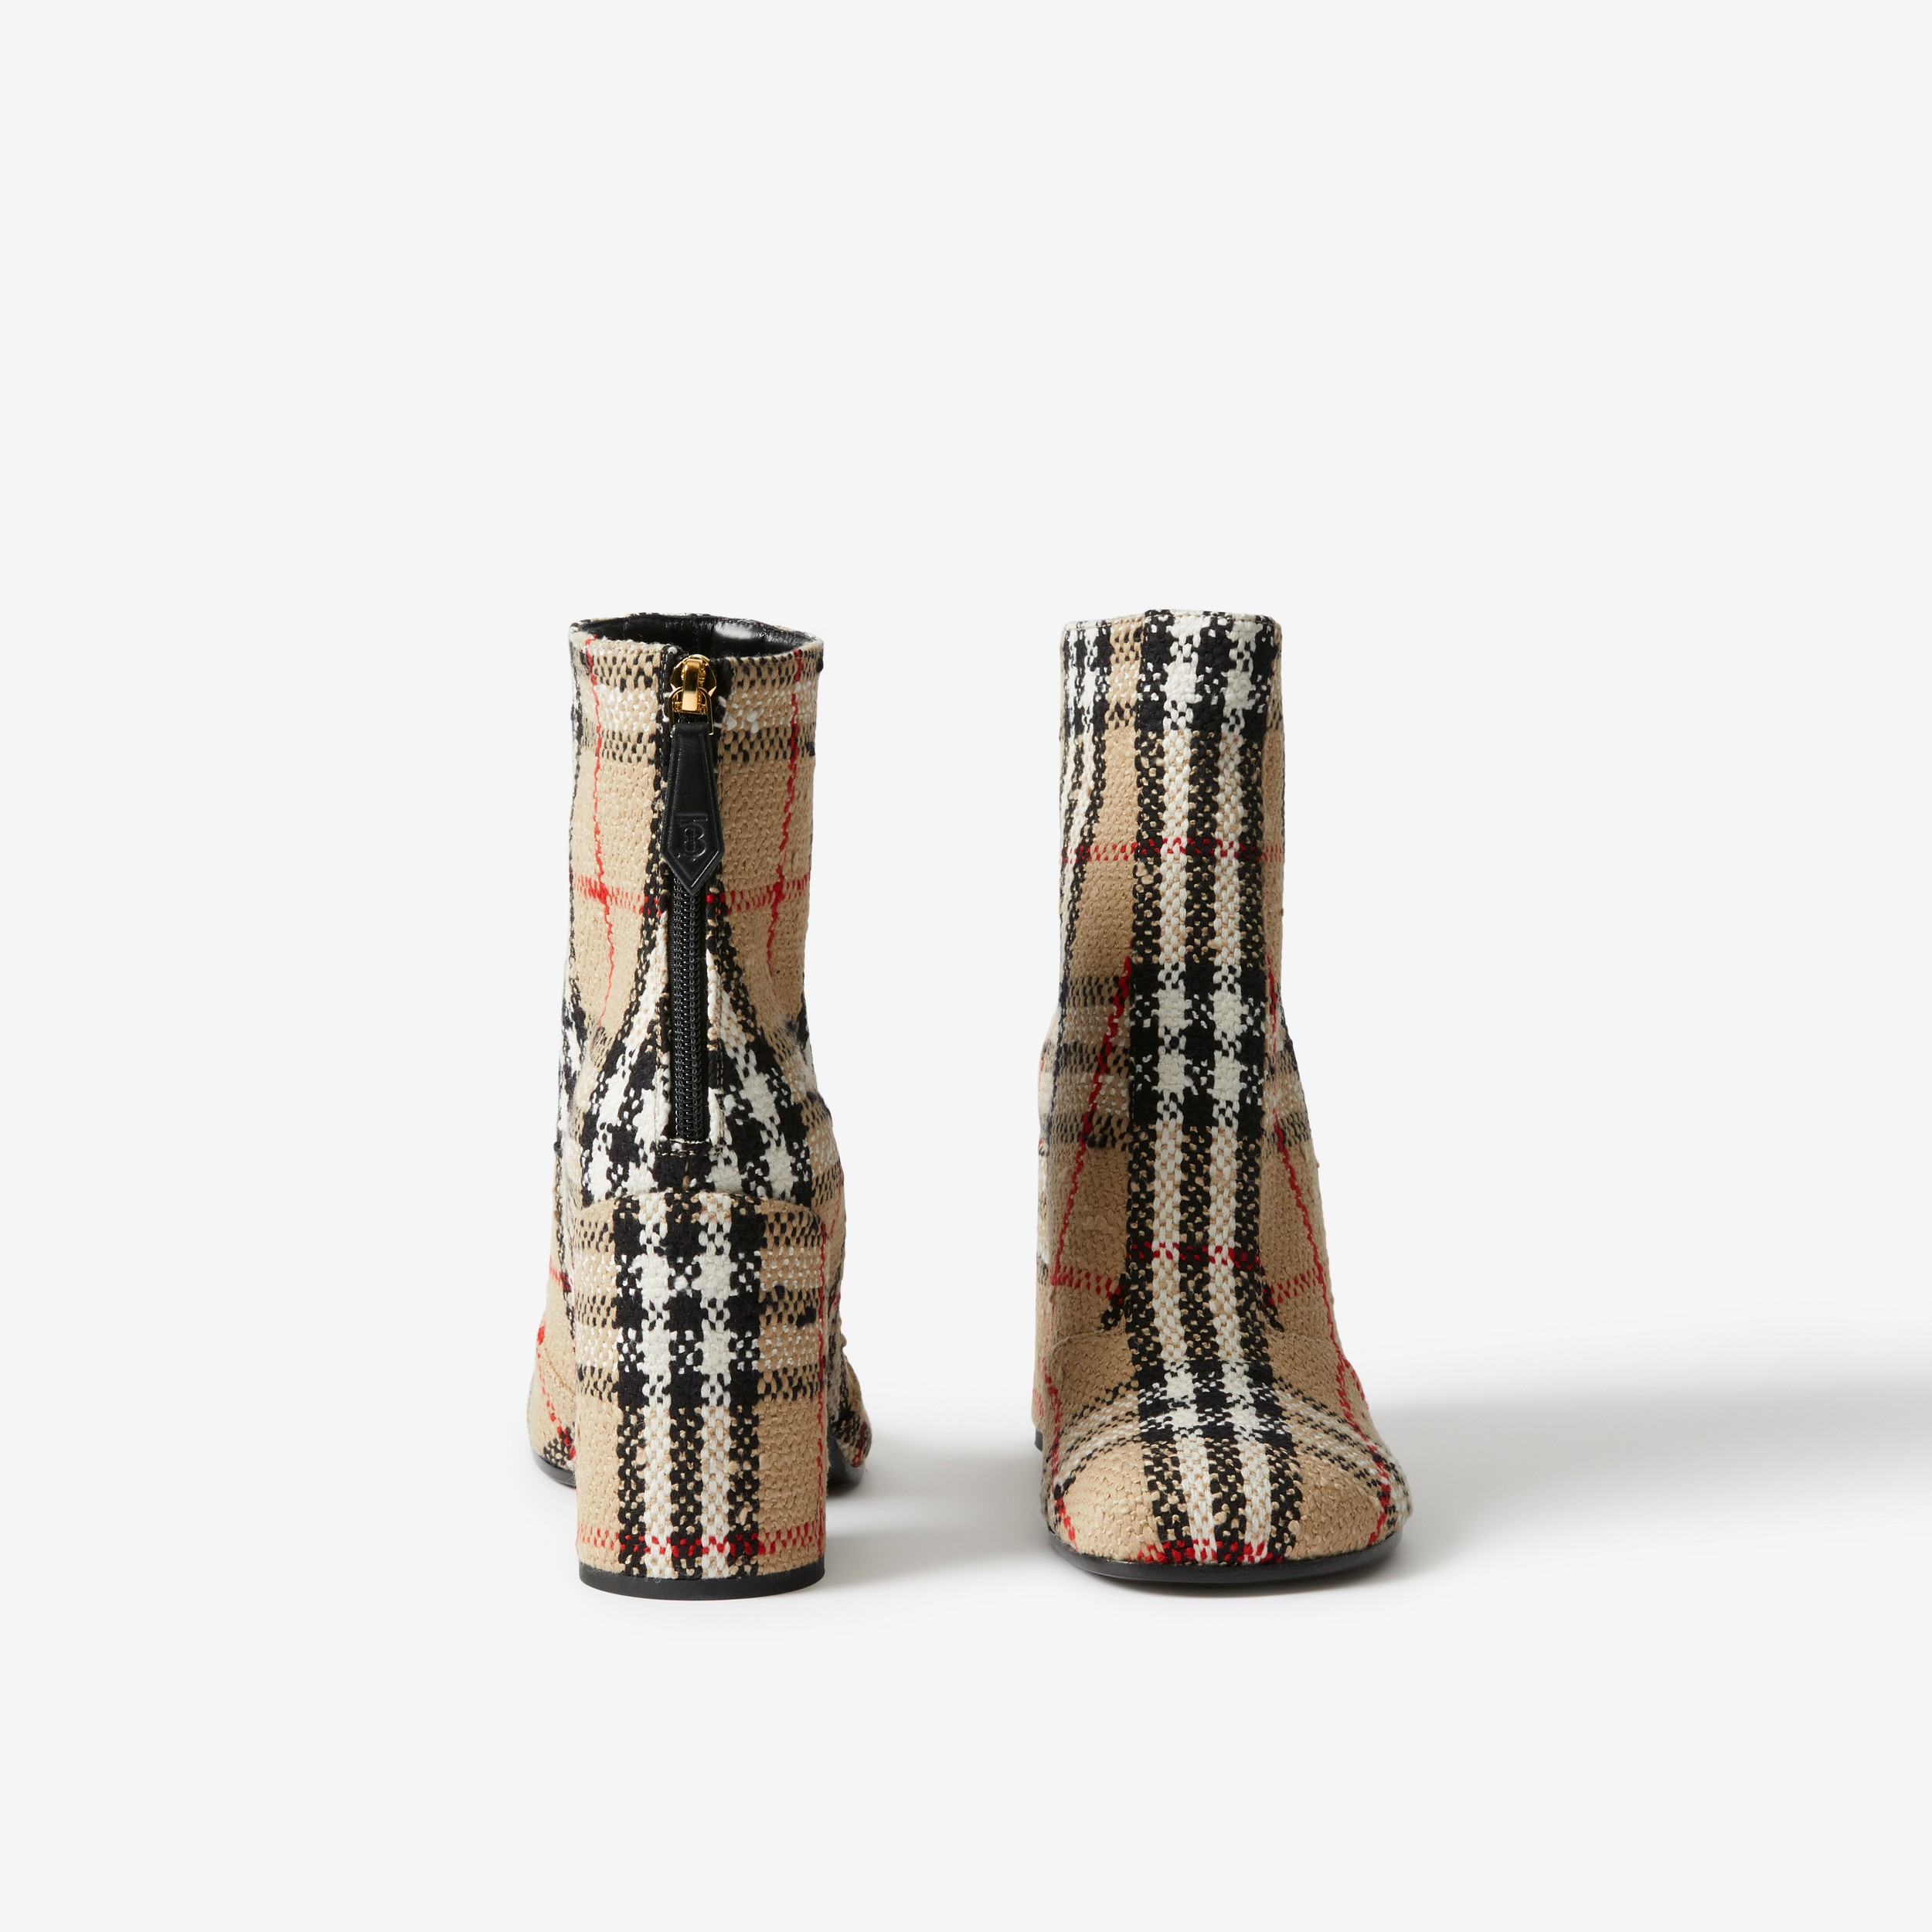 Ankle boots em Vintage Check Bouclé (Bege Clássico) - Mulheres | Burberry® oficial - 4